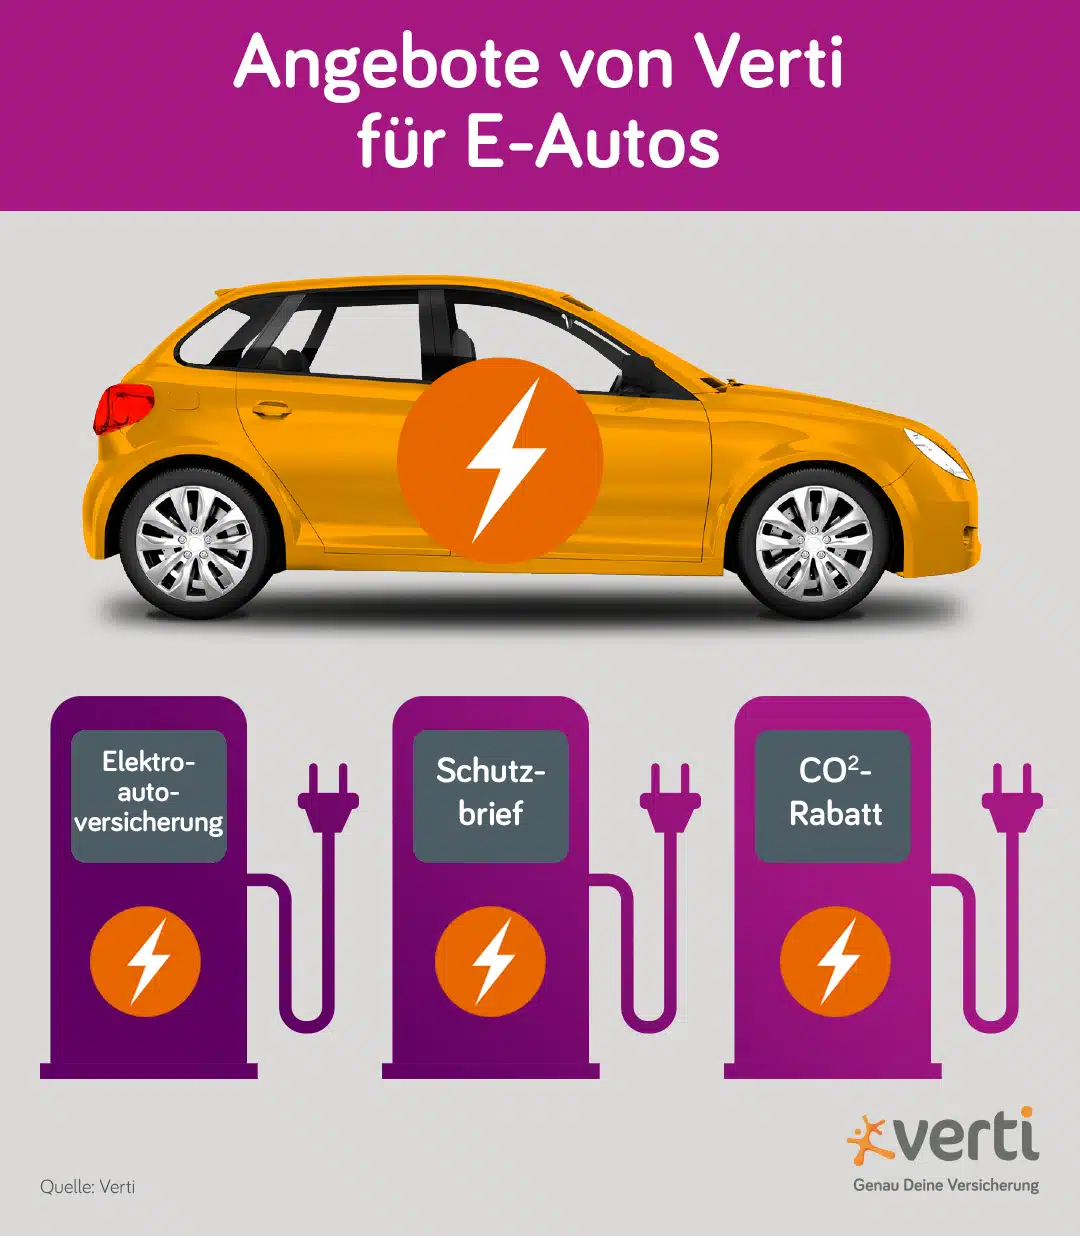 Angebote von Verti für E-Autos